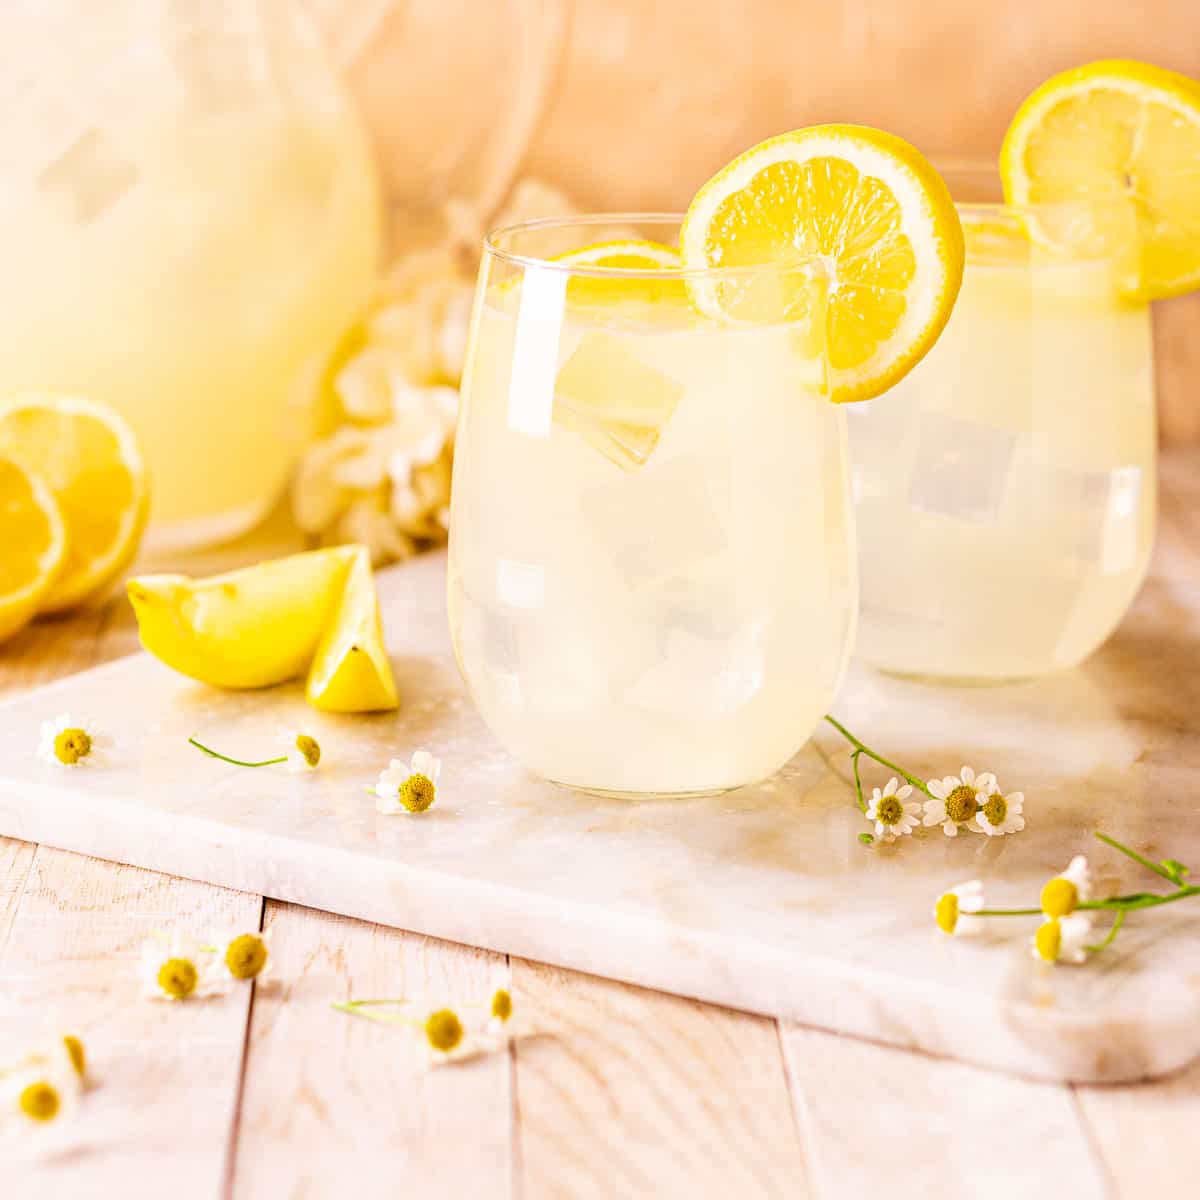 lemons lemonade